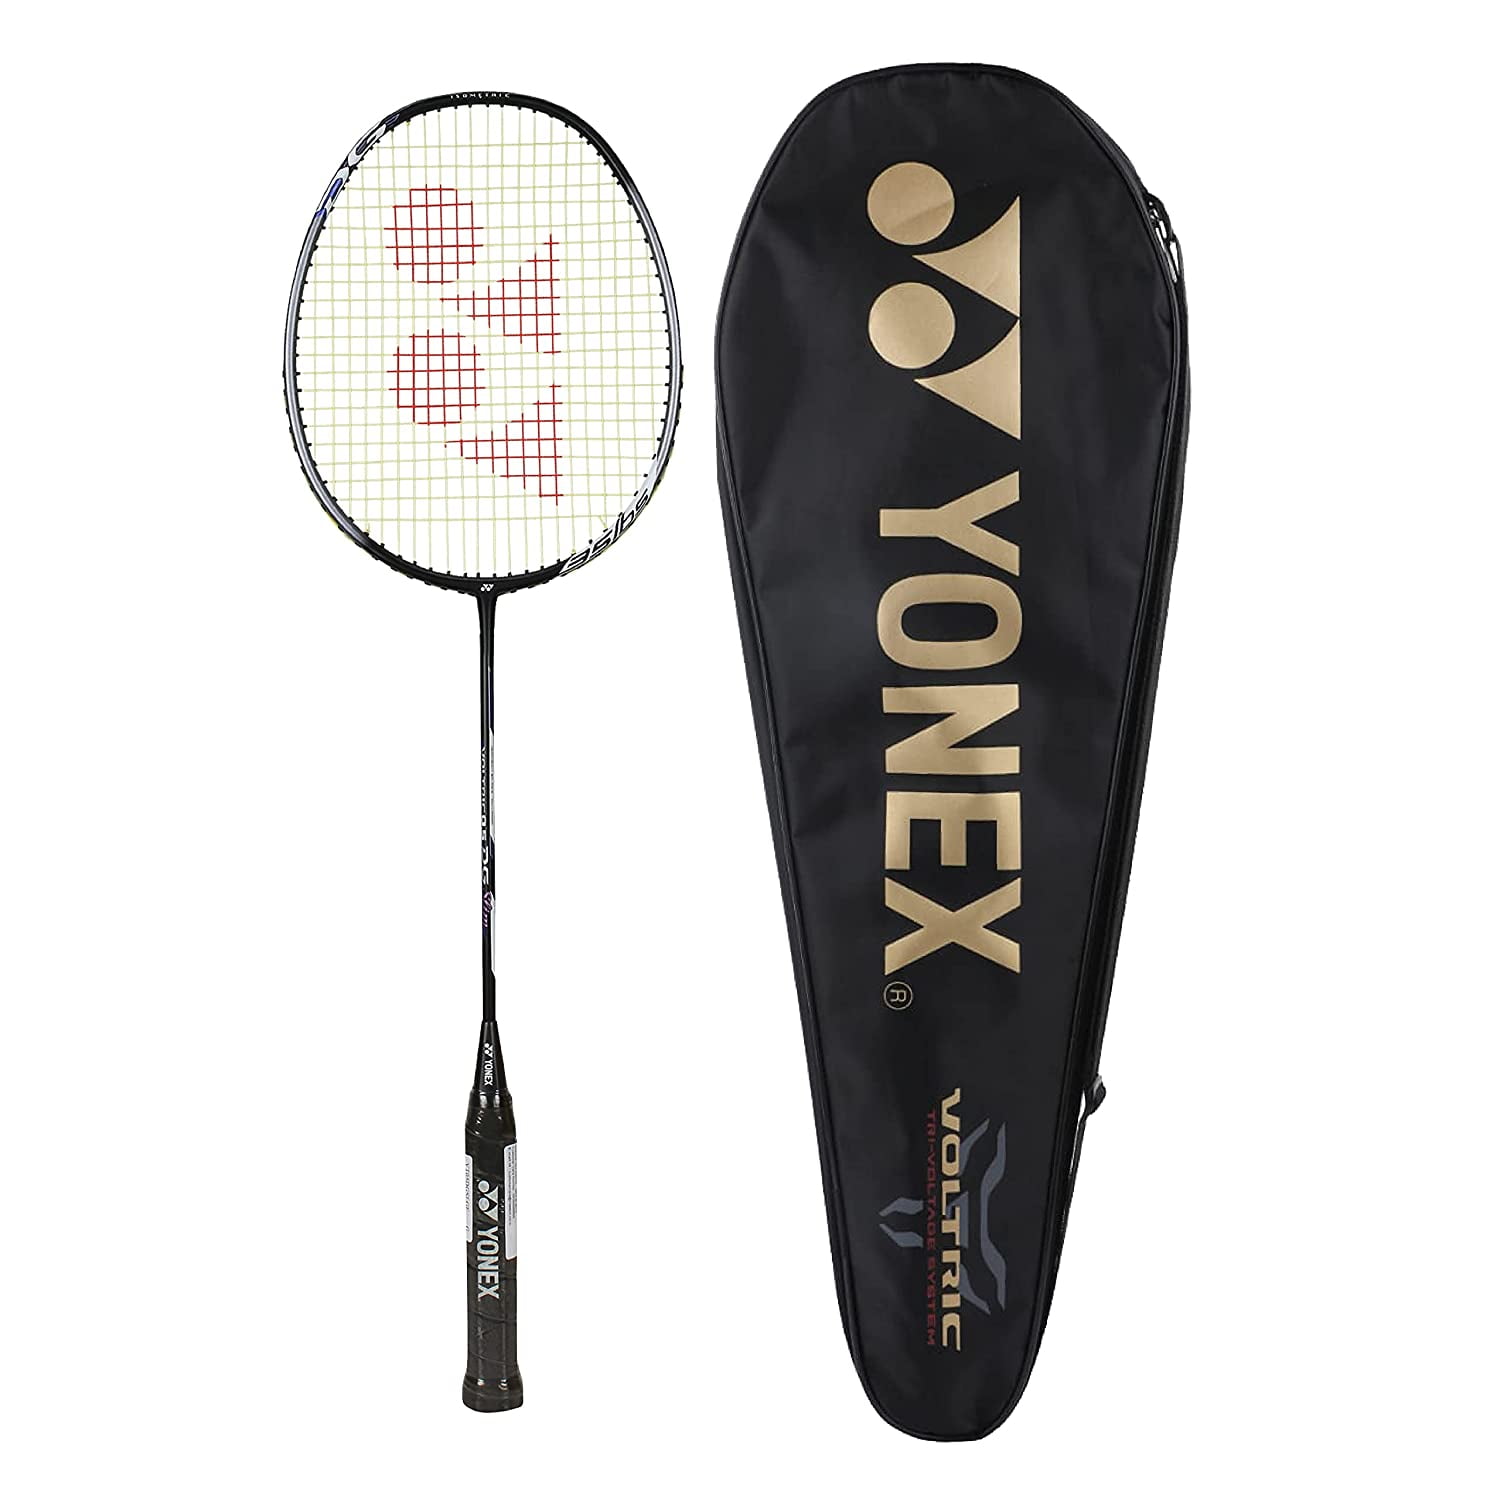 Yonex Voltric 0.1 DG Badminton Racquet RACKET Tri Voltage System* Lowest Price 